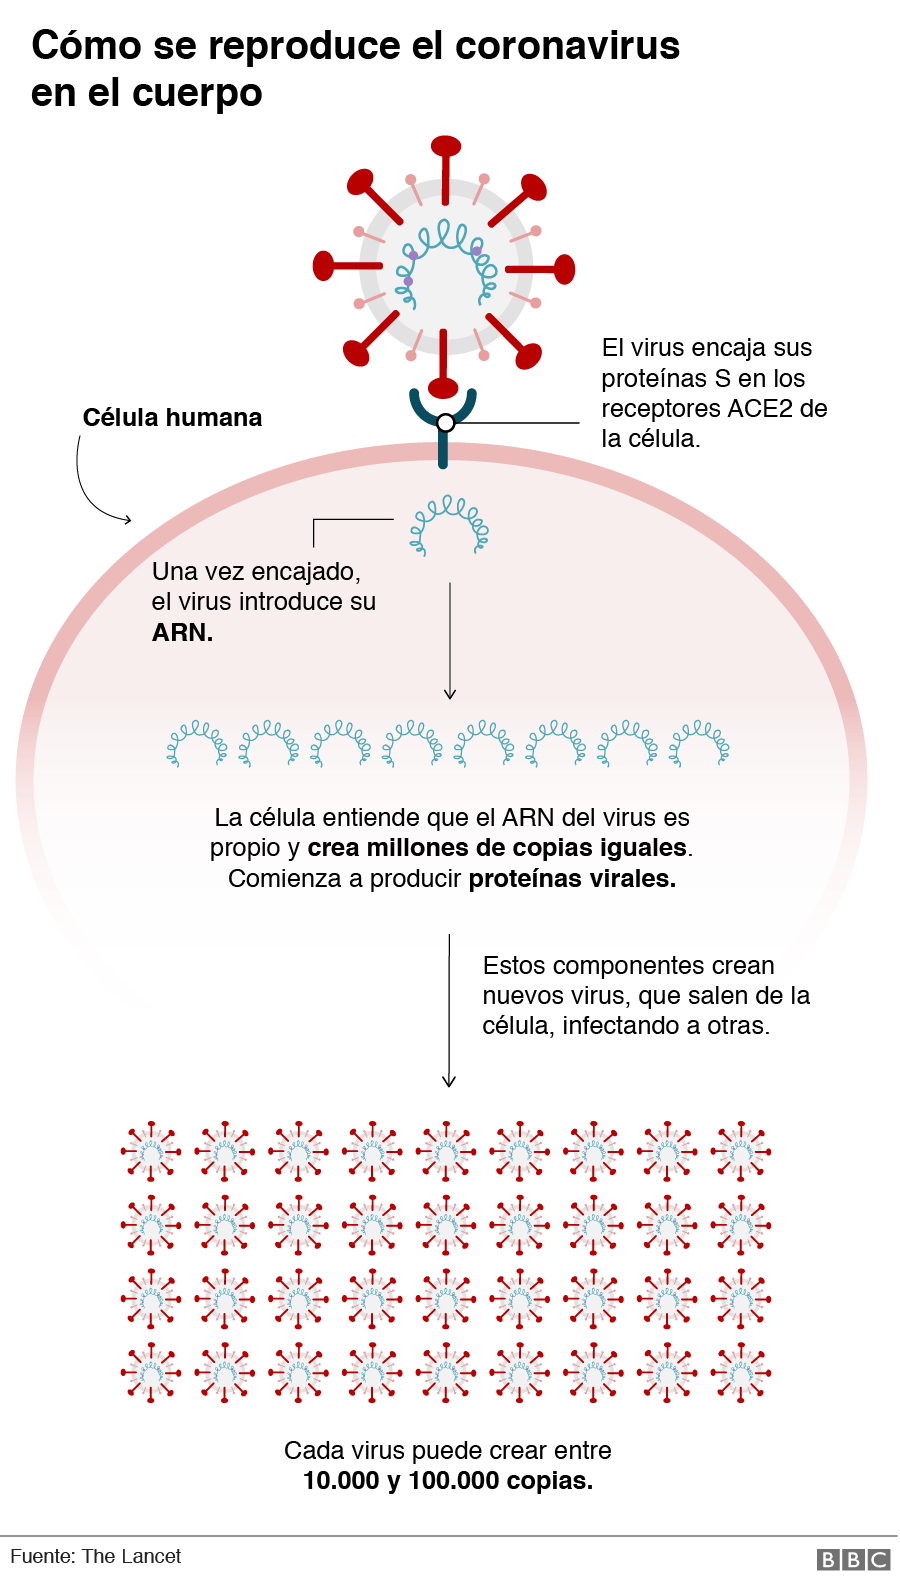 Gráfico de cómo se reproduce el coronavirus en el cuerpo